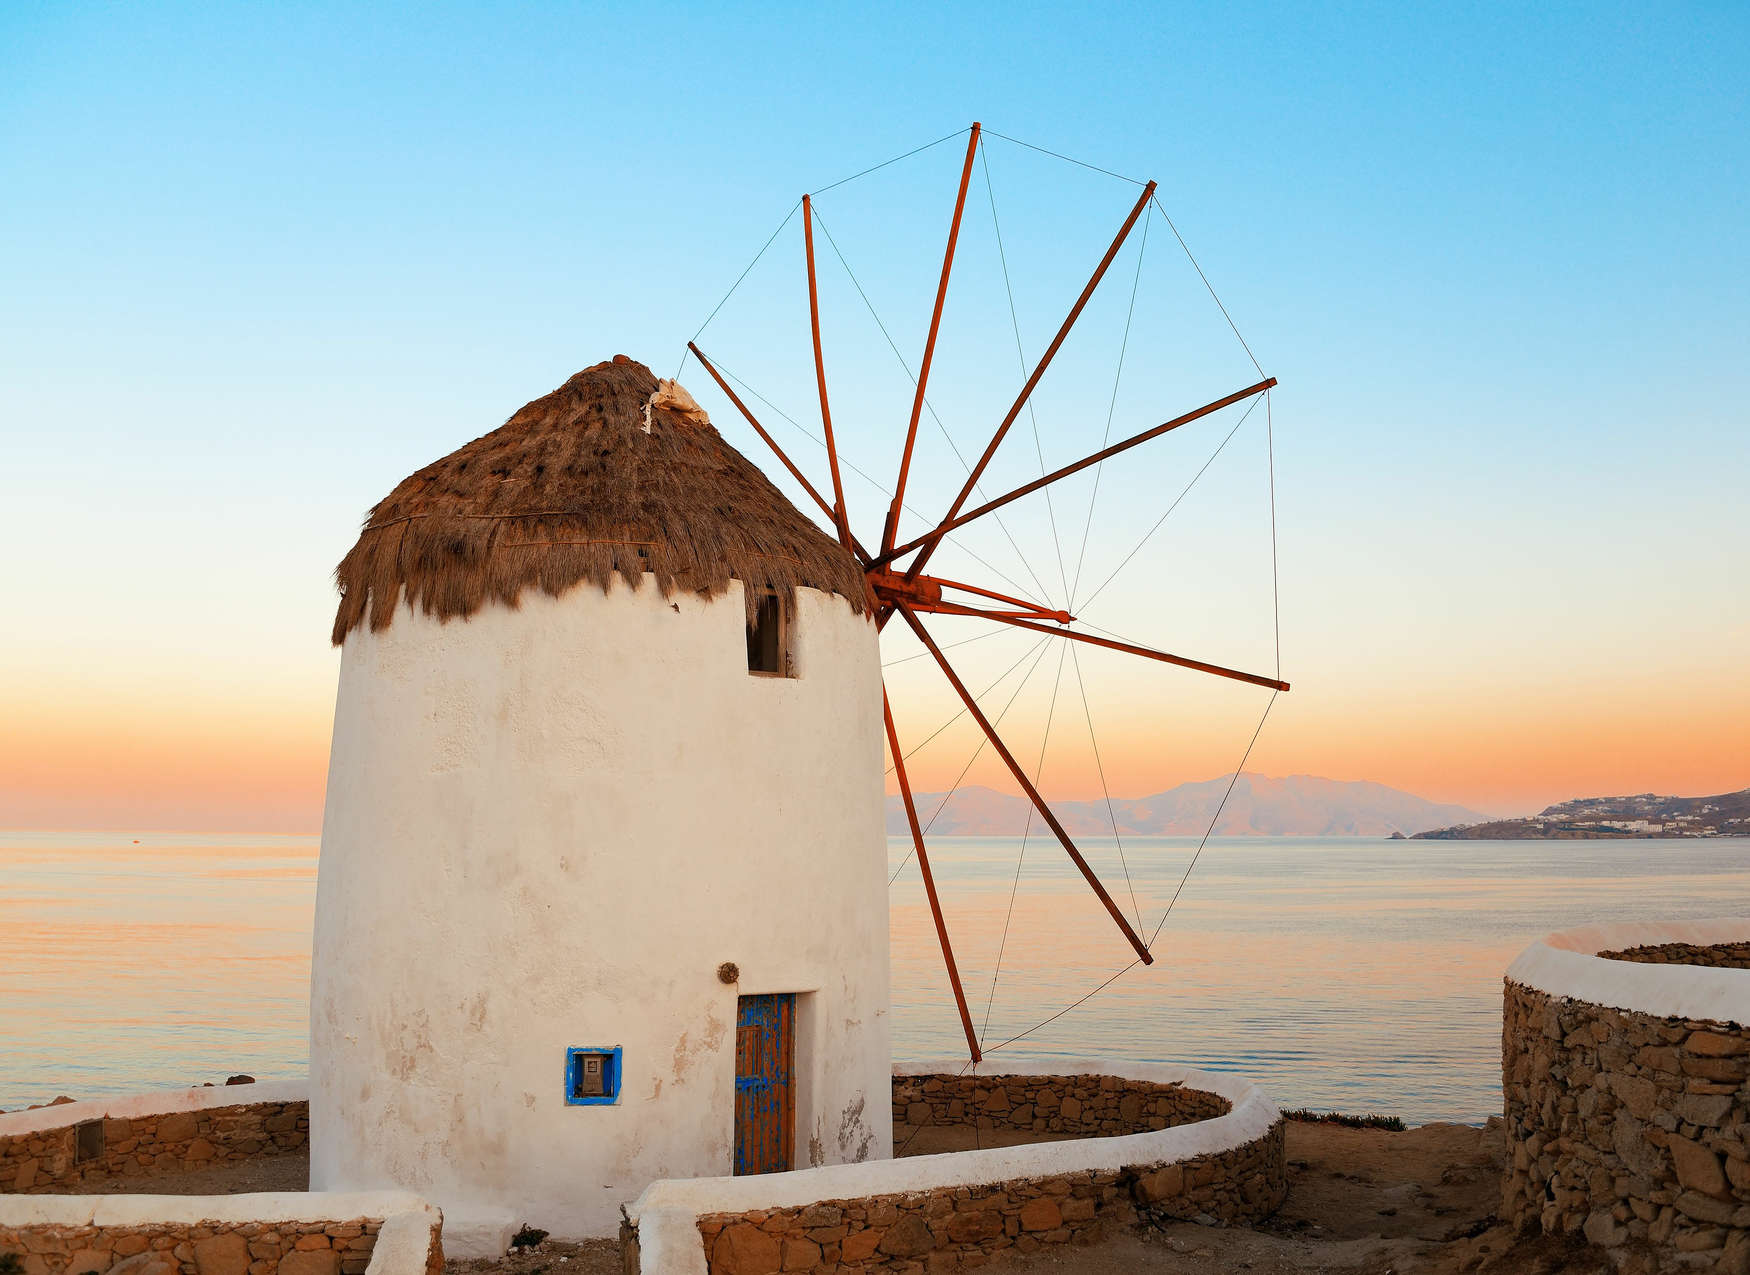             Fototapete griechische Windmühle an der Küste – Blau, Orange, Beige
        